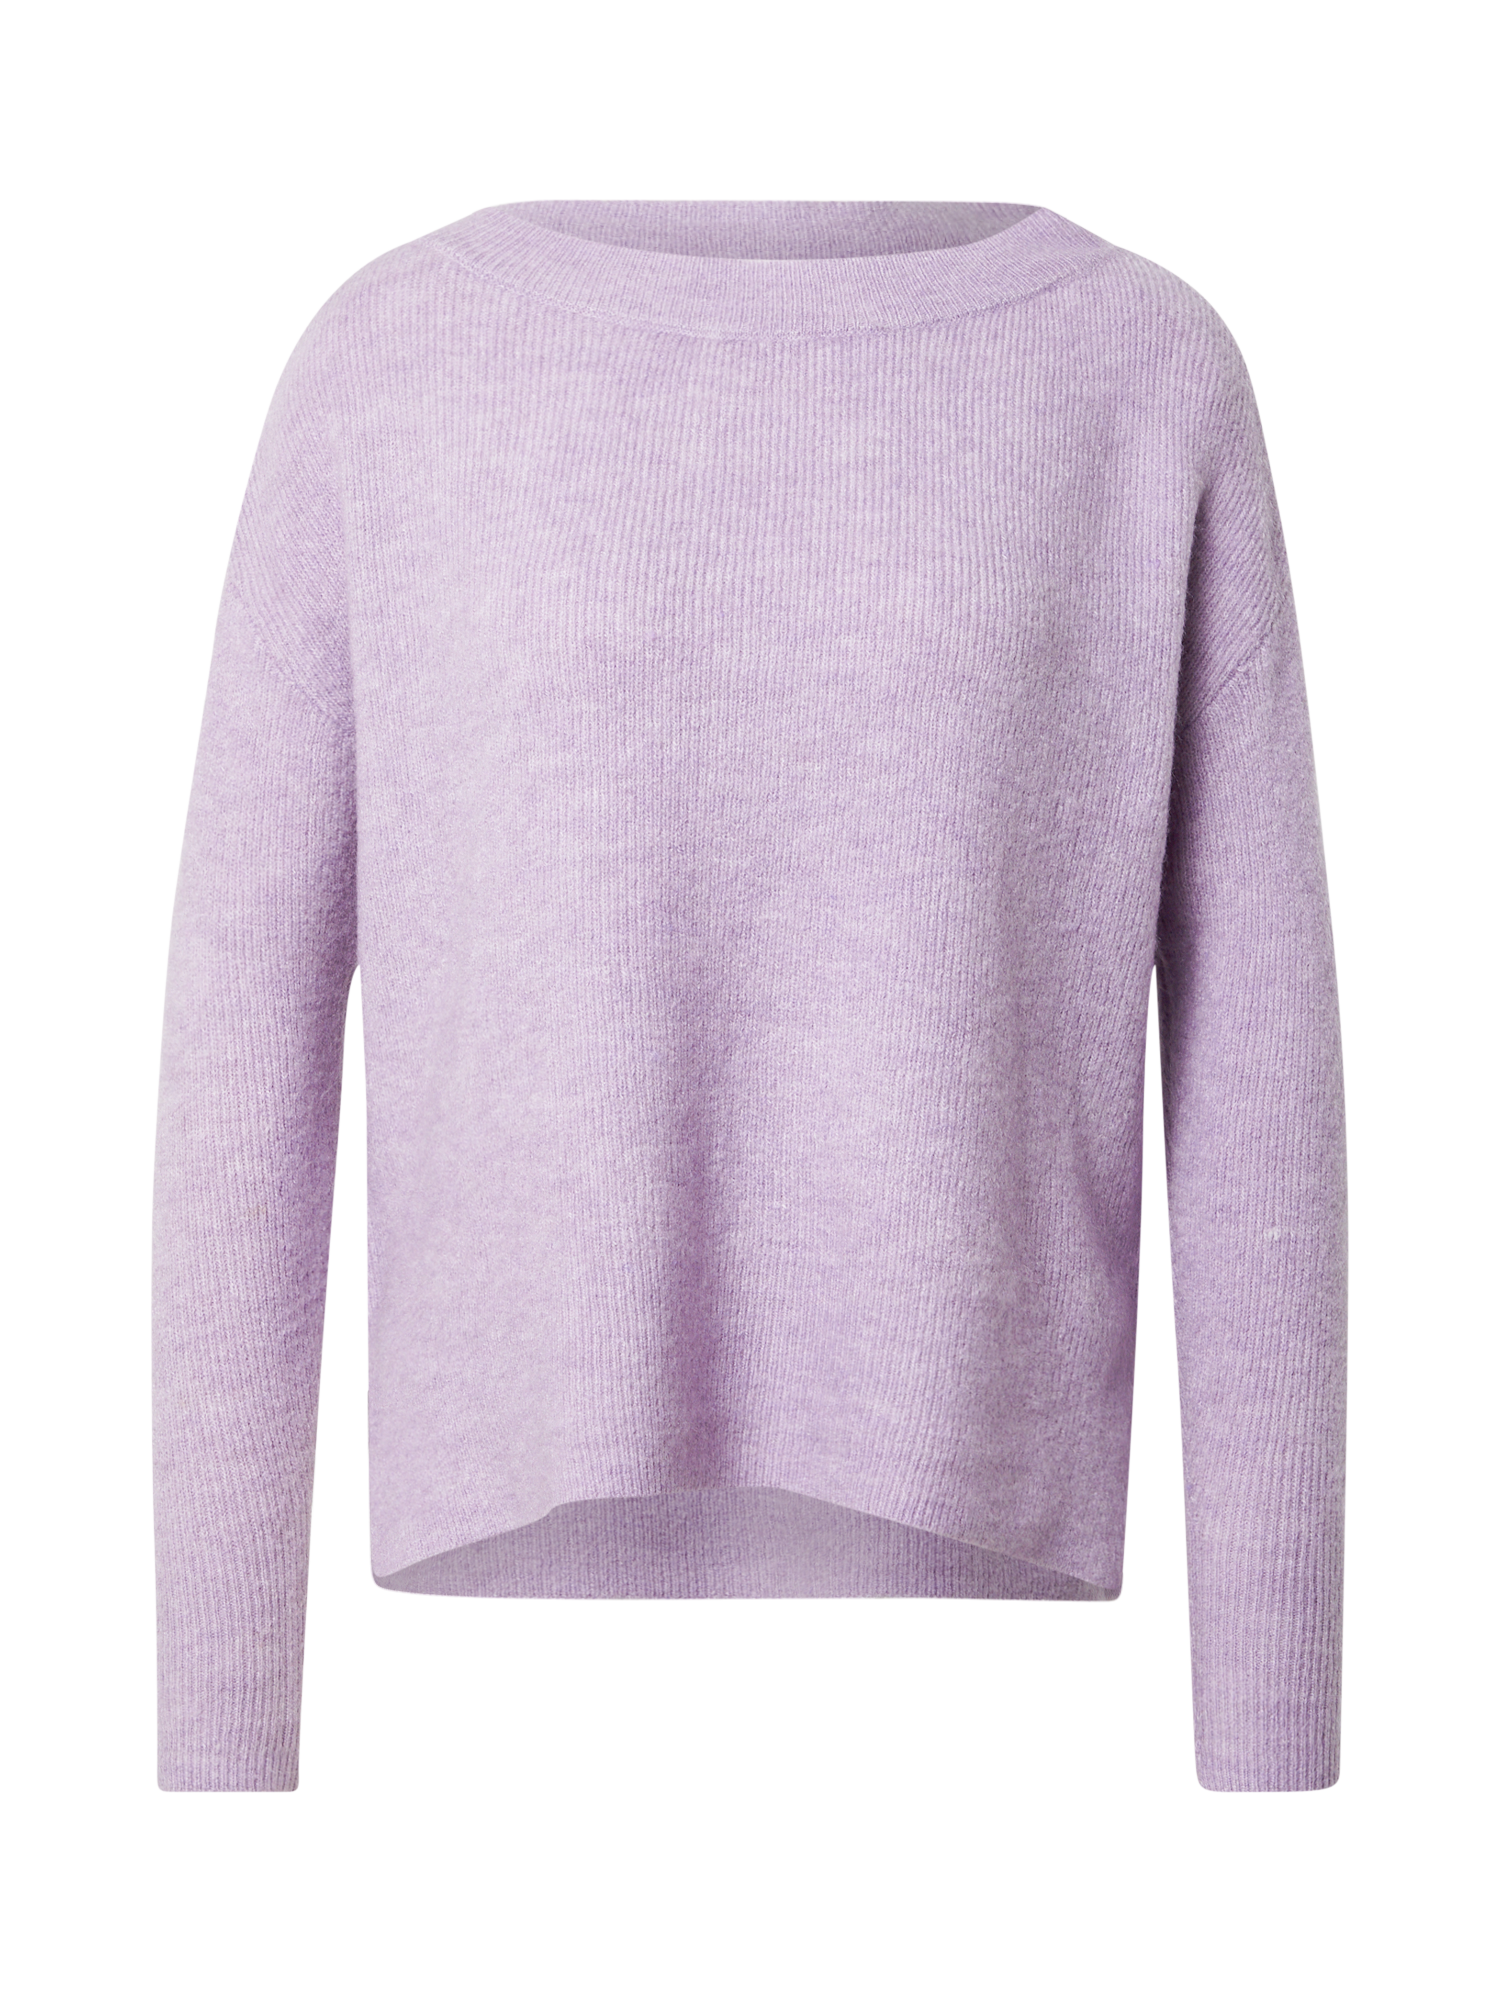 Odzież Swetry & dzianina VERO MODA Sweter LEFILE w kolorze Fioletowym 